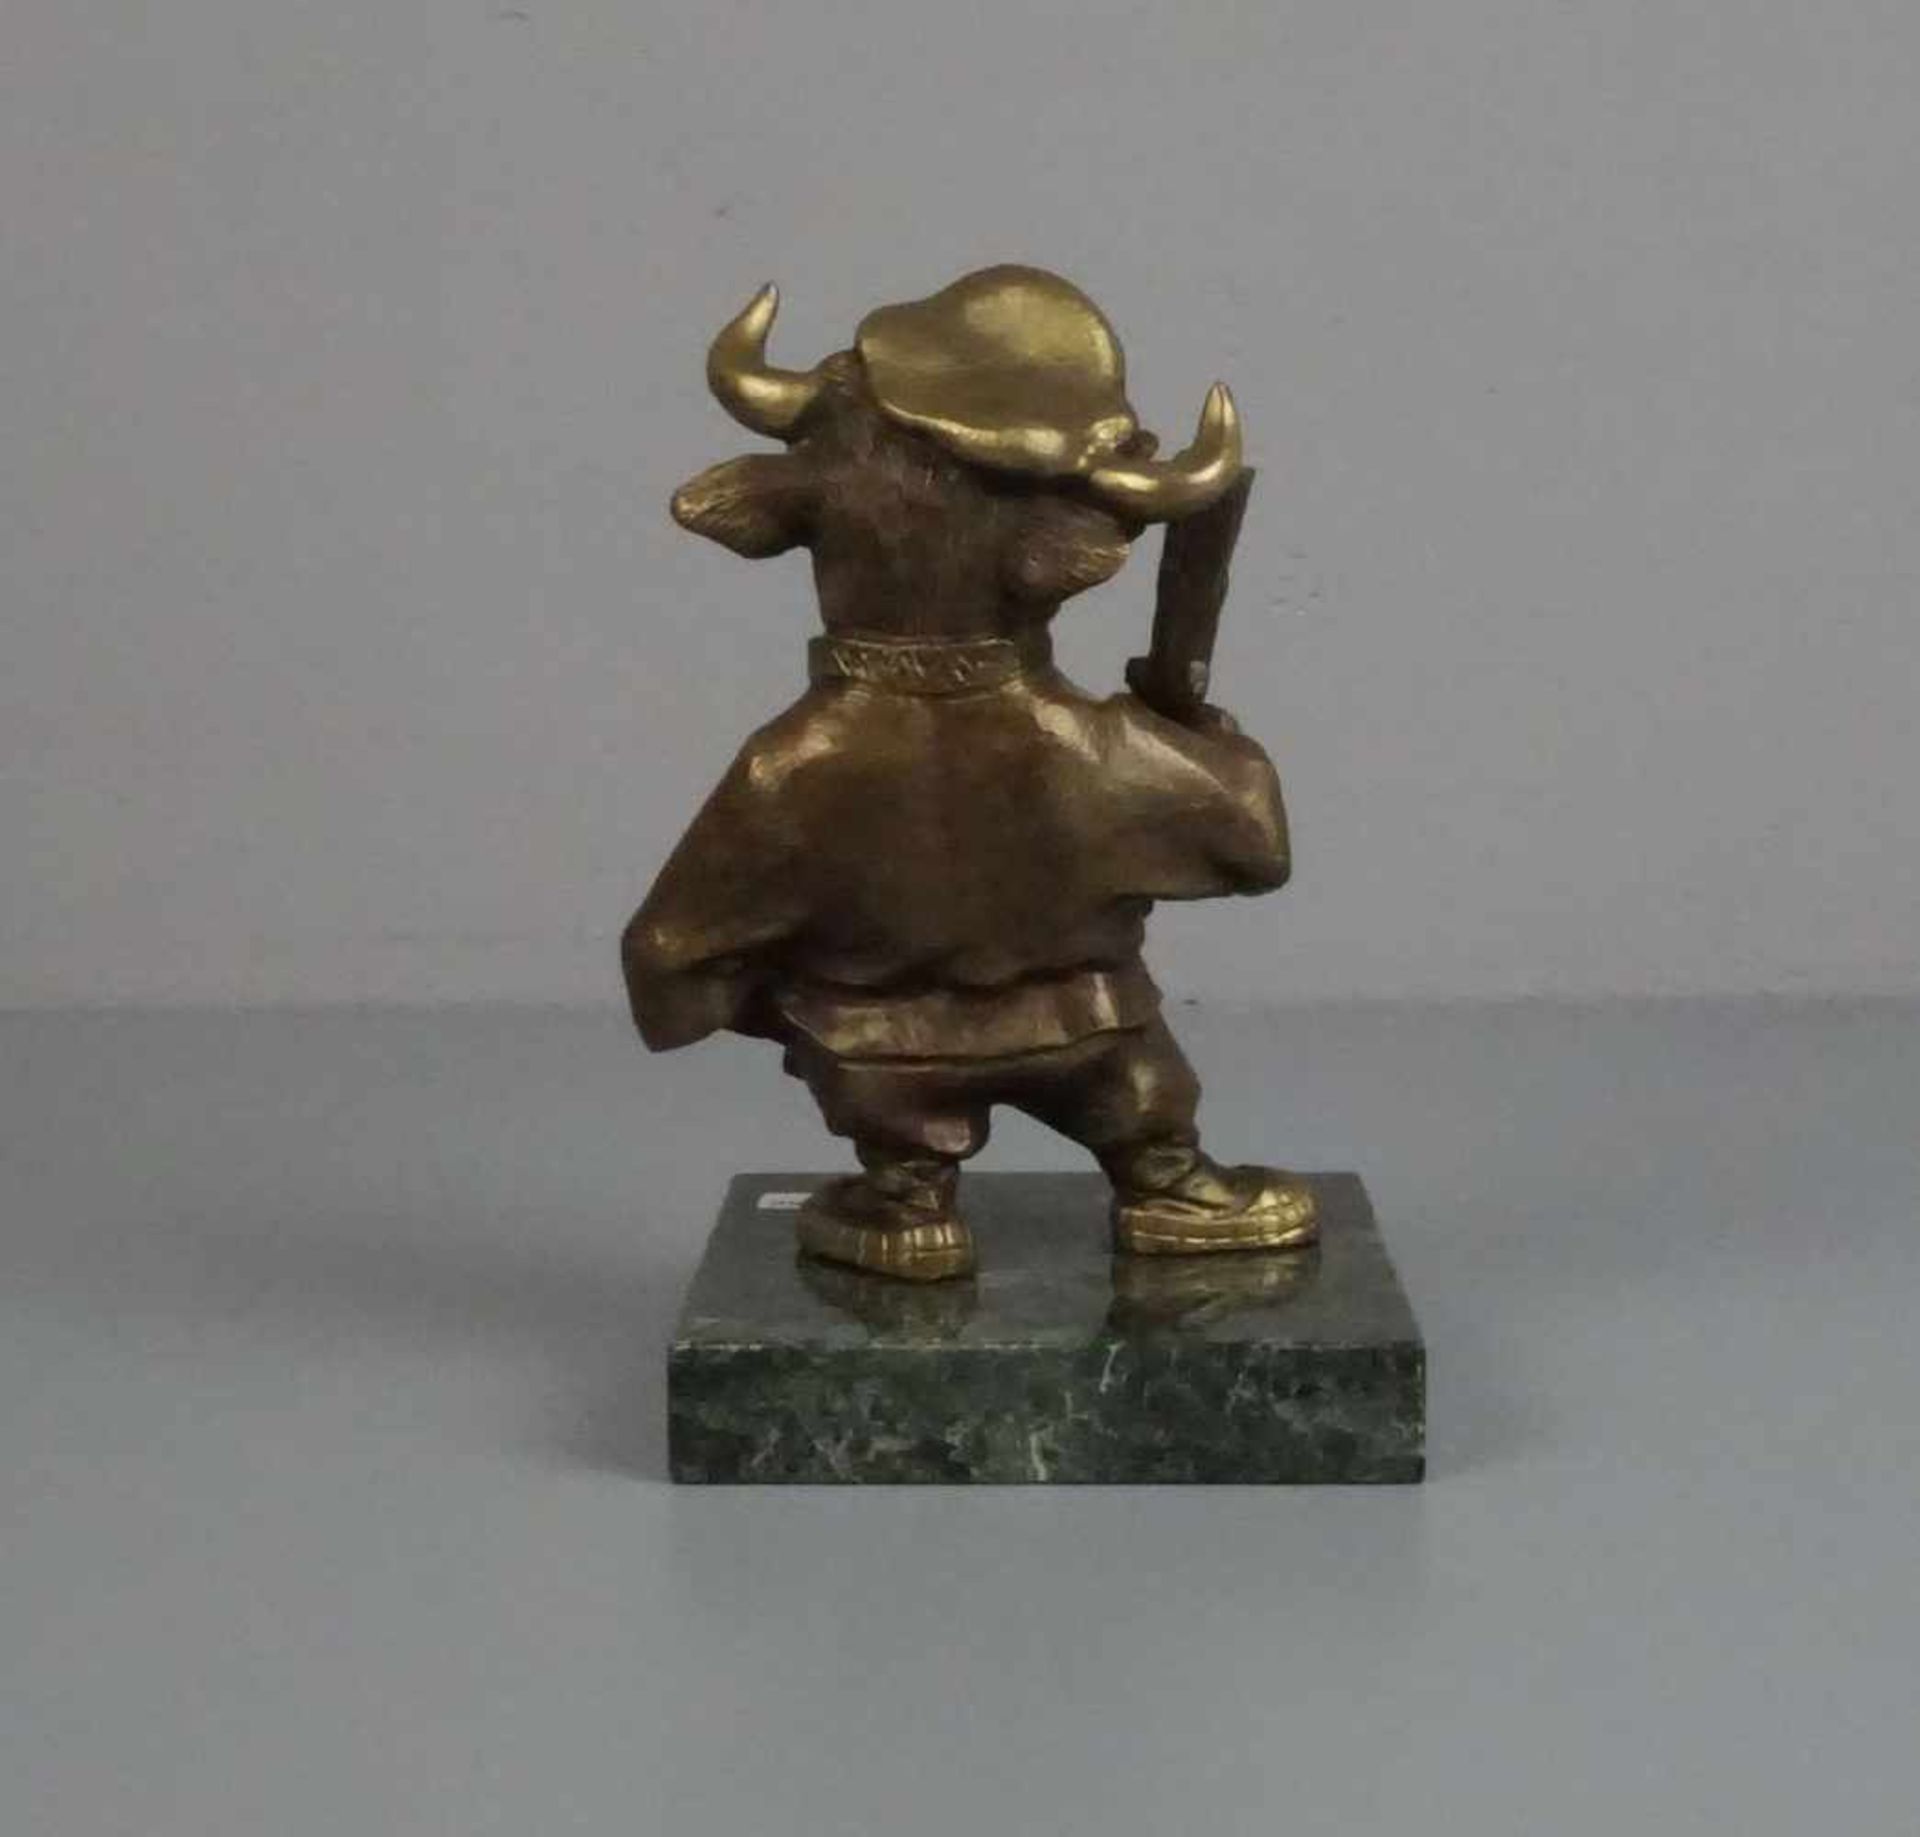 RUSSISCHER BILDHAUER DES 20./21. Jh., Skulptur / sculpture: "Stier als Kosake", Bronze, patiniert, - Bild 3 aus 5